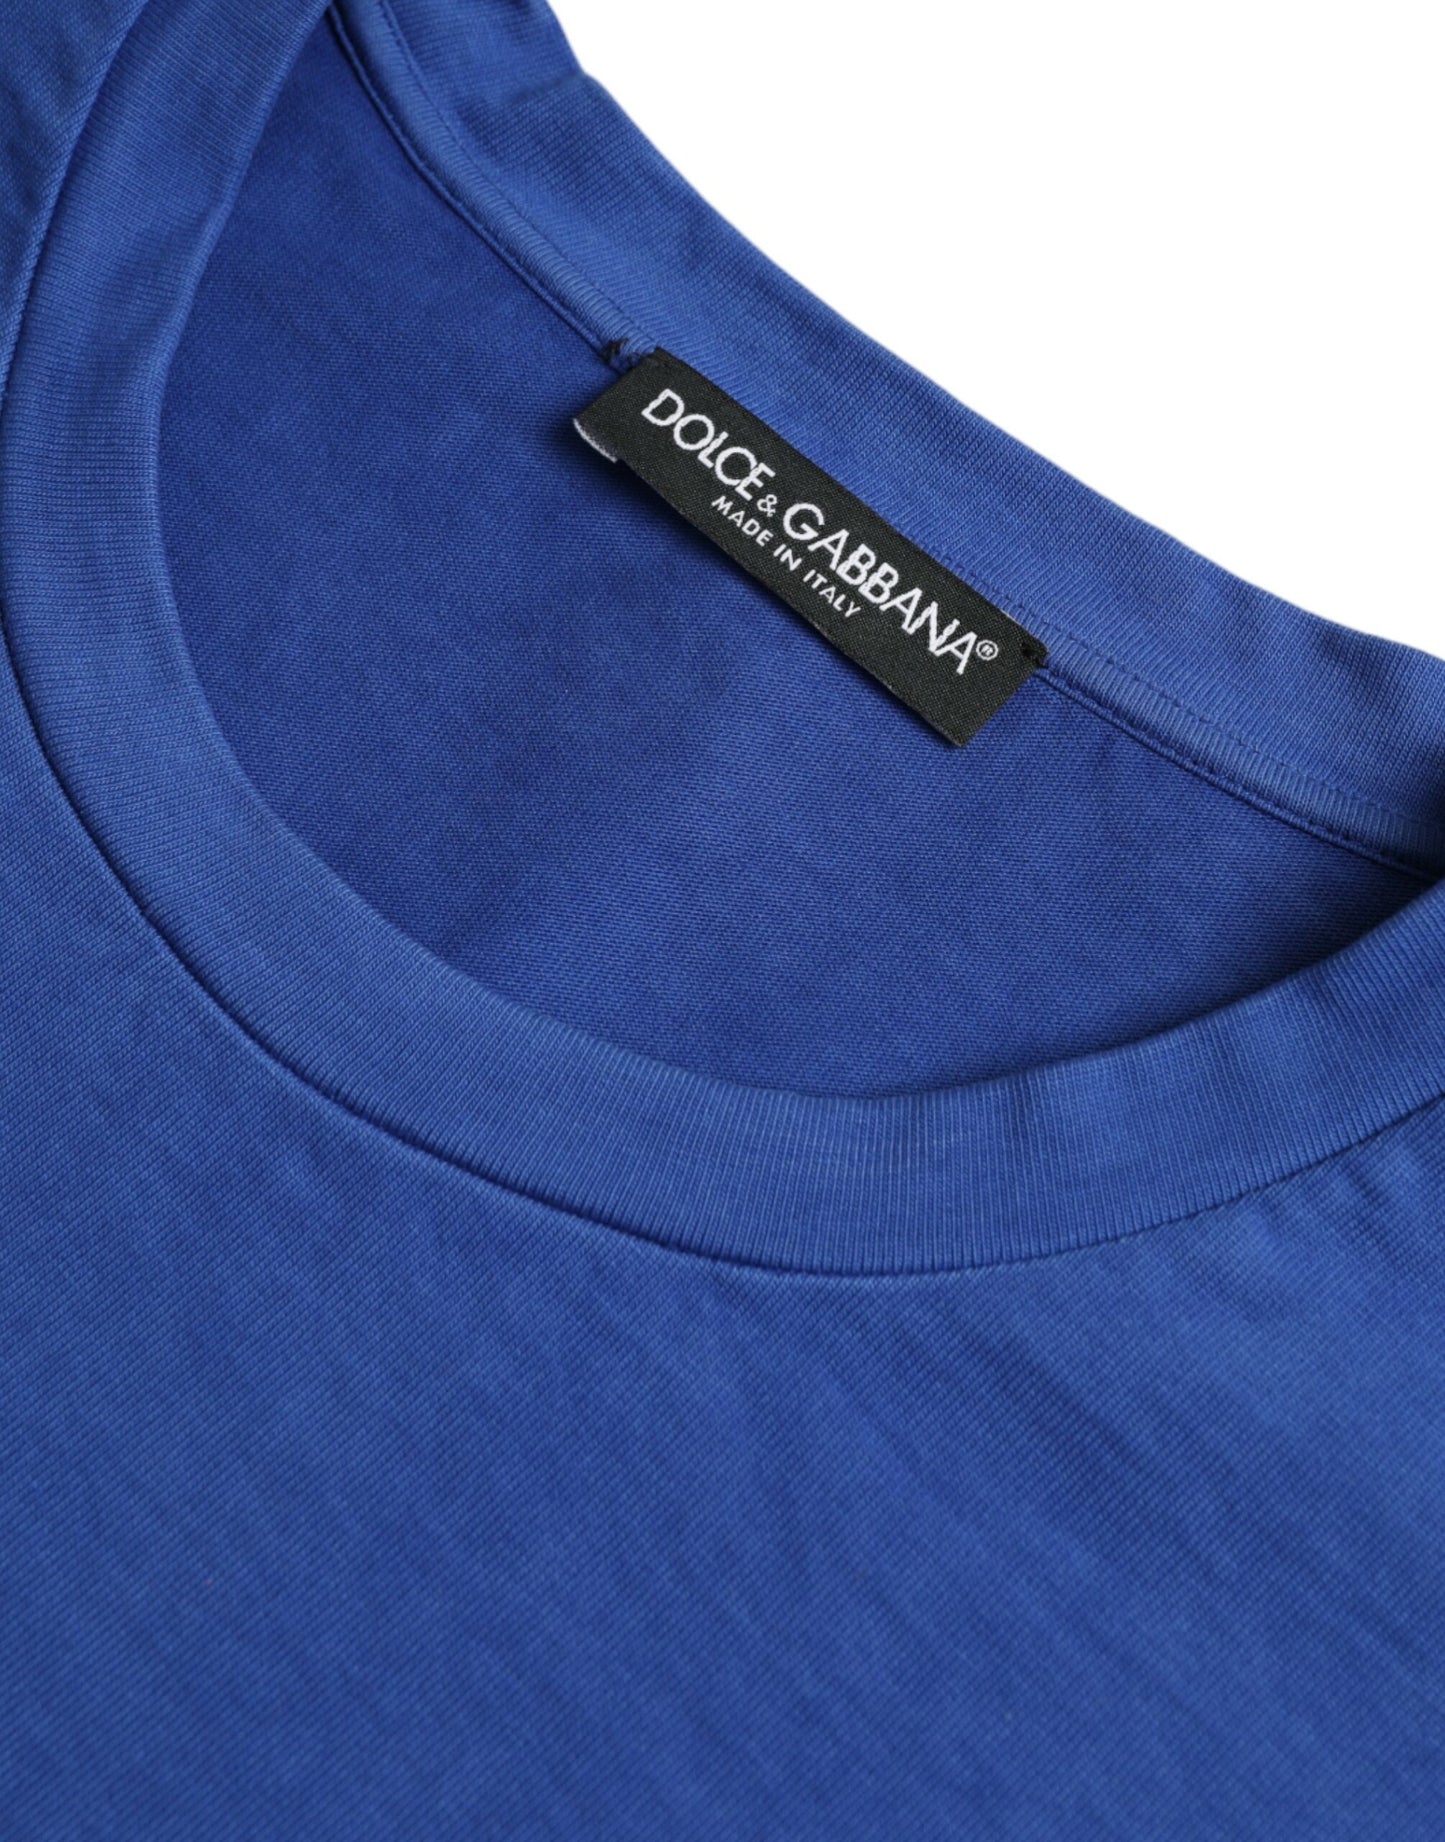 Exquisite Blue Cotton Crew Neck T-Shirt